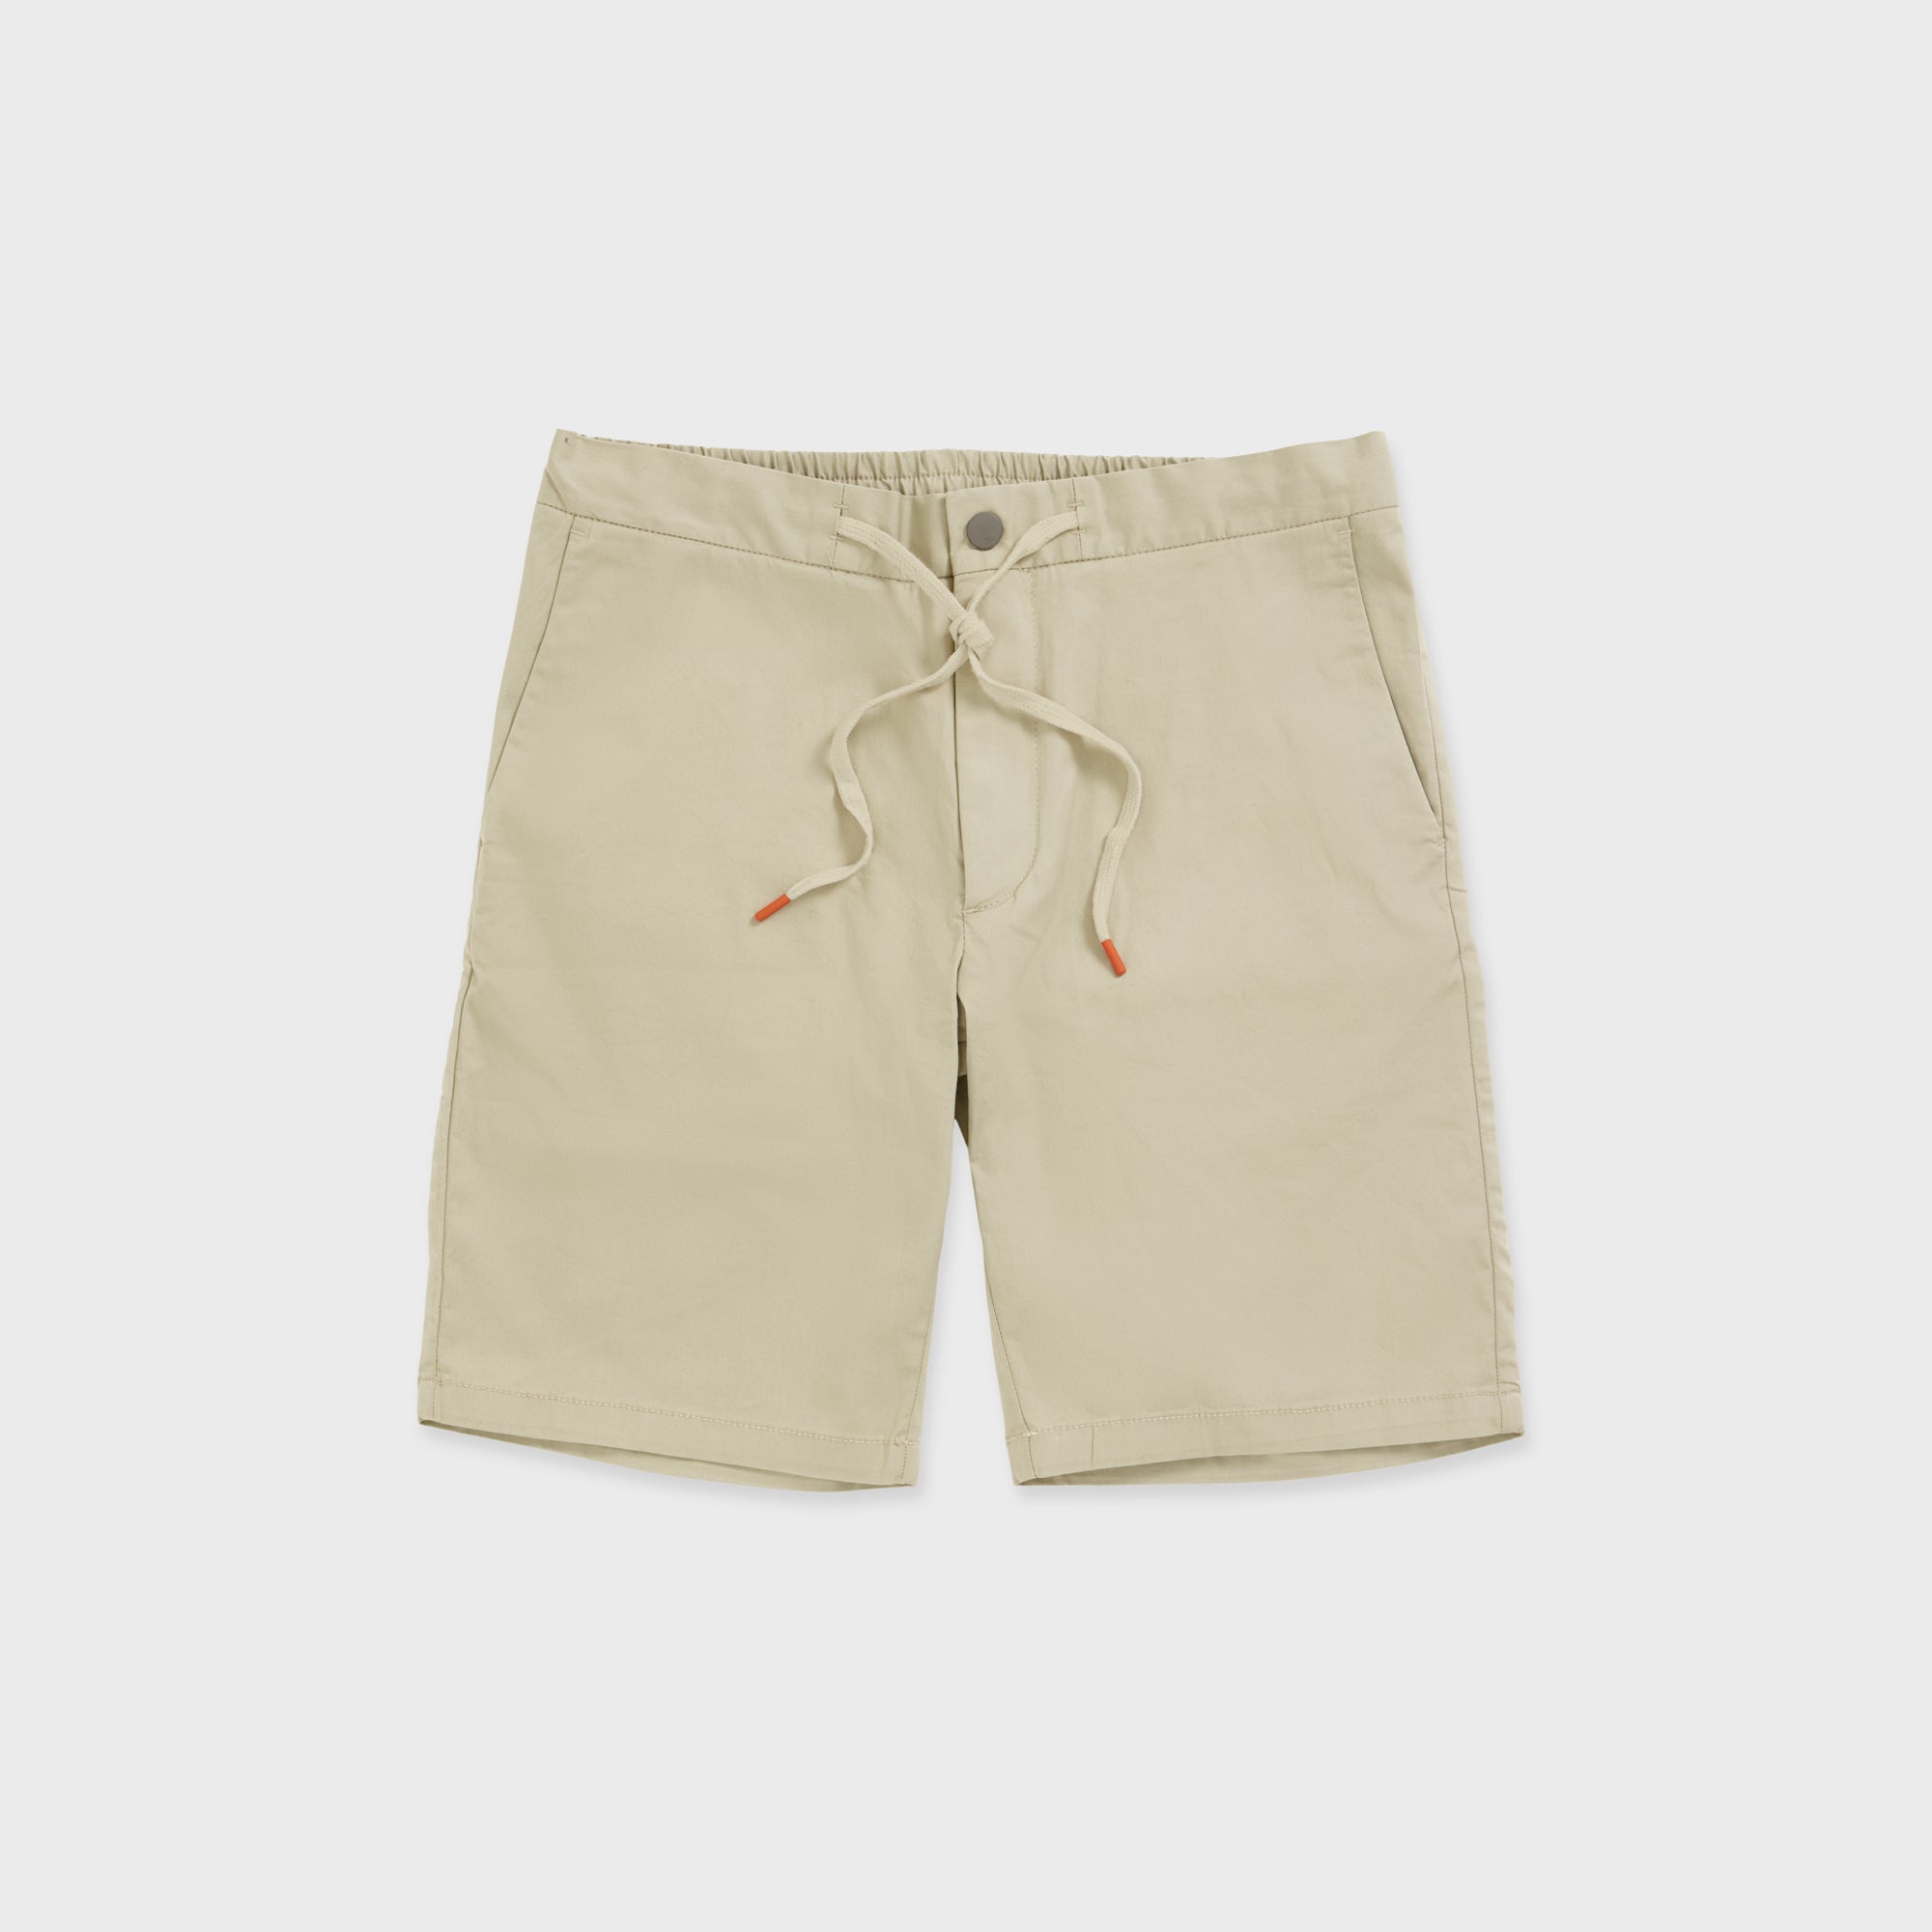 SPOKE Friday Shorts - Stone Custom Fit Shorts - SPOKE